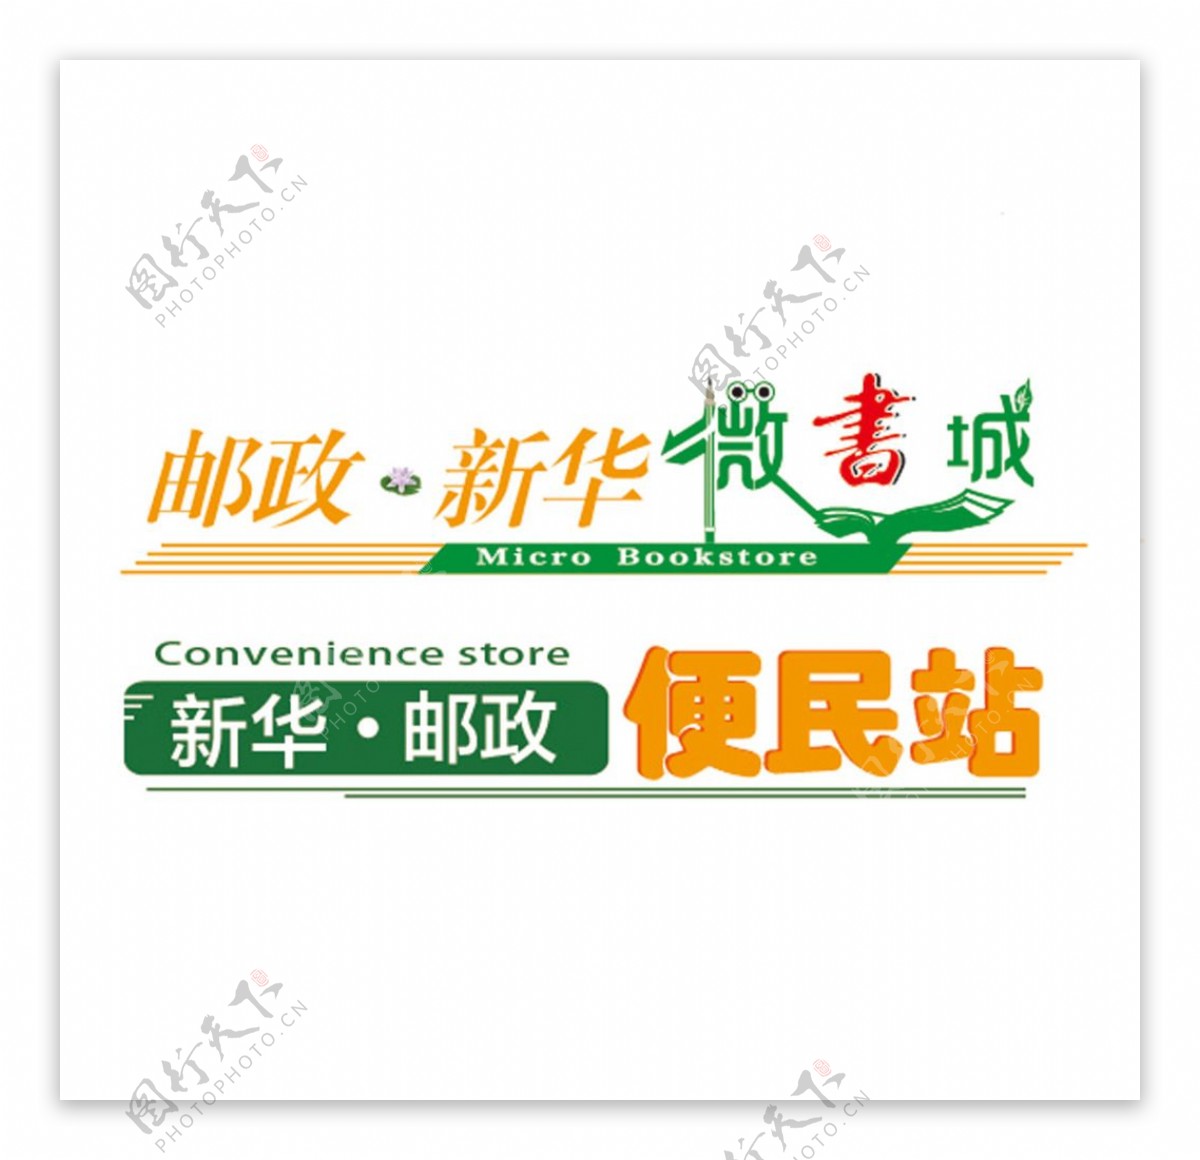 新华邮政便民站微书城商标设计